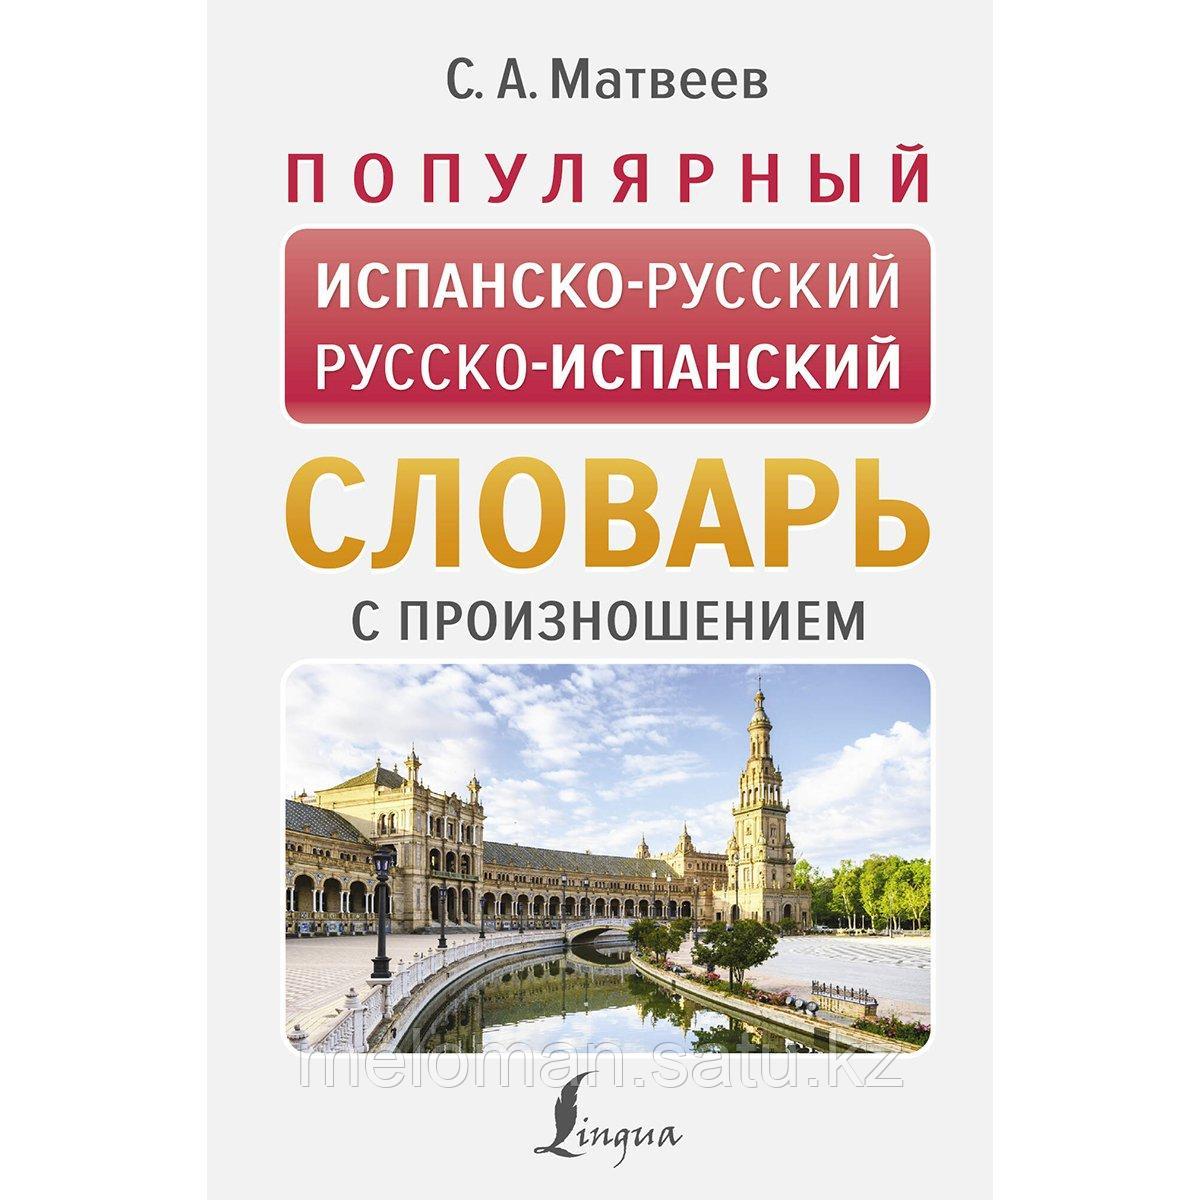 Матвеев С. А.: Популярный испанско-русский, русско-испанский словарь с произношением